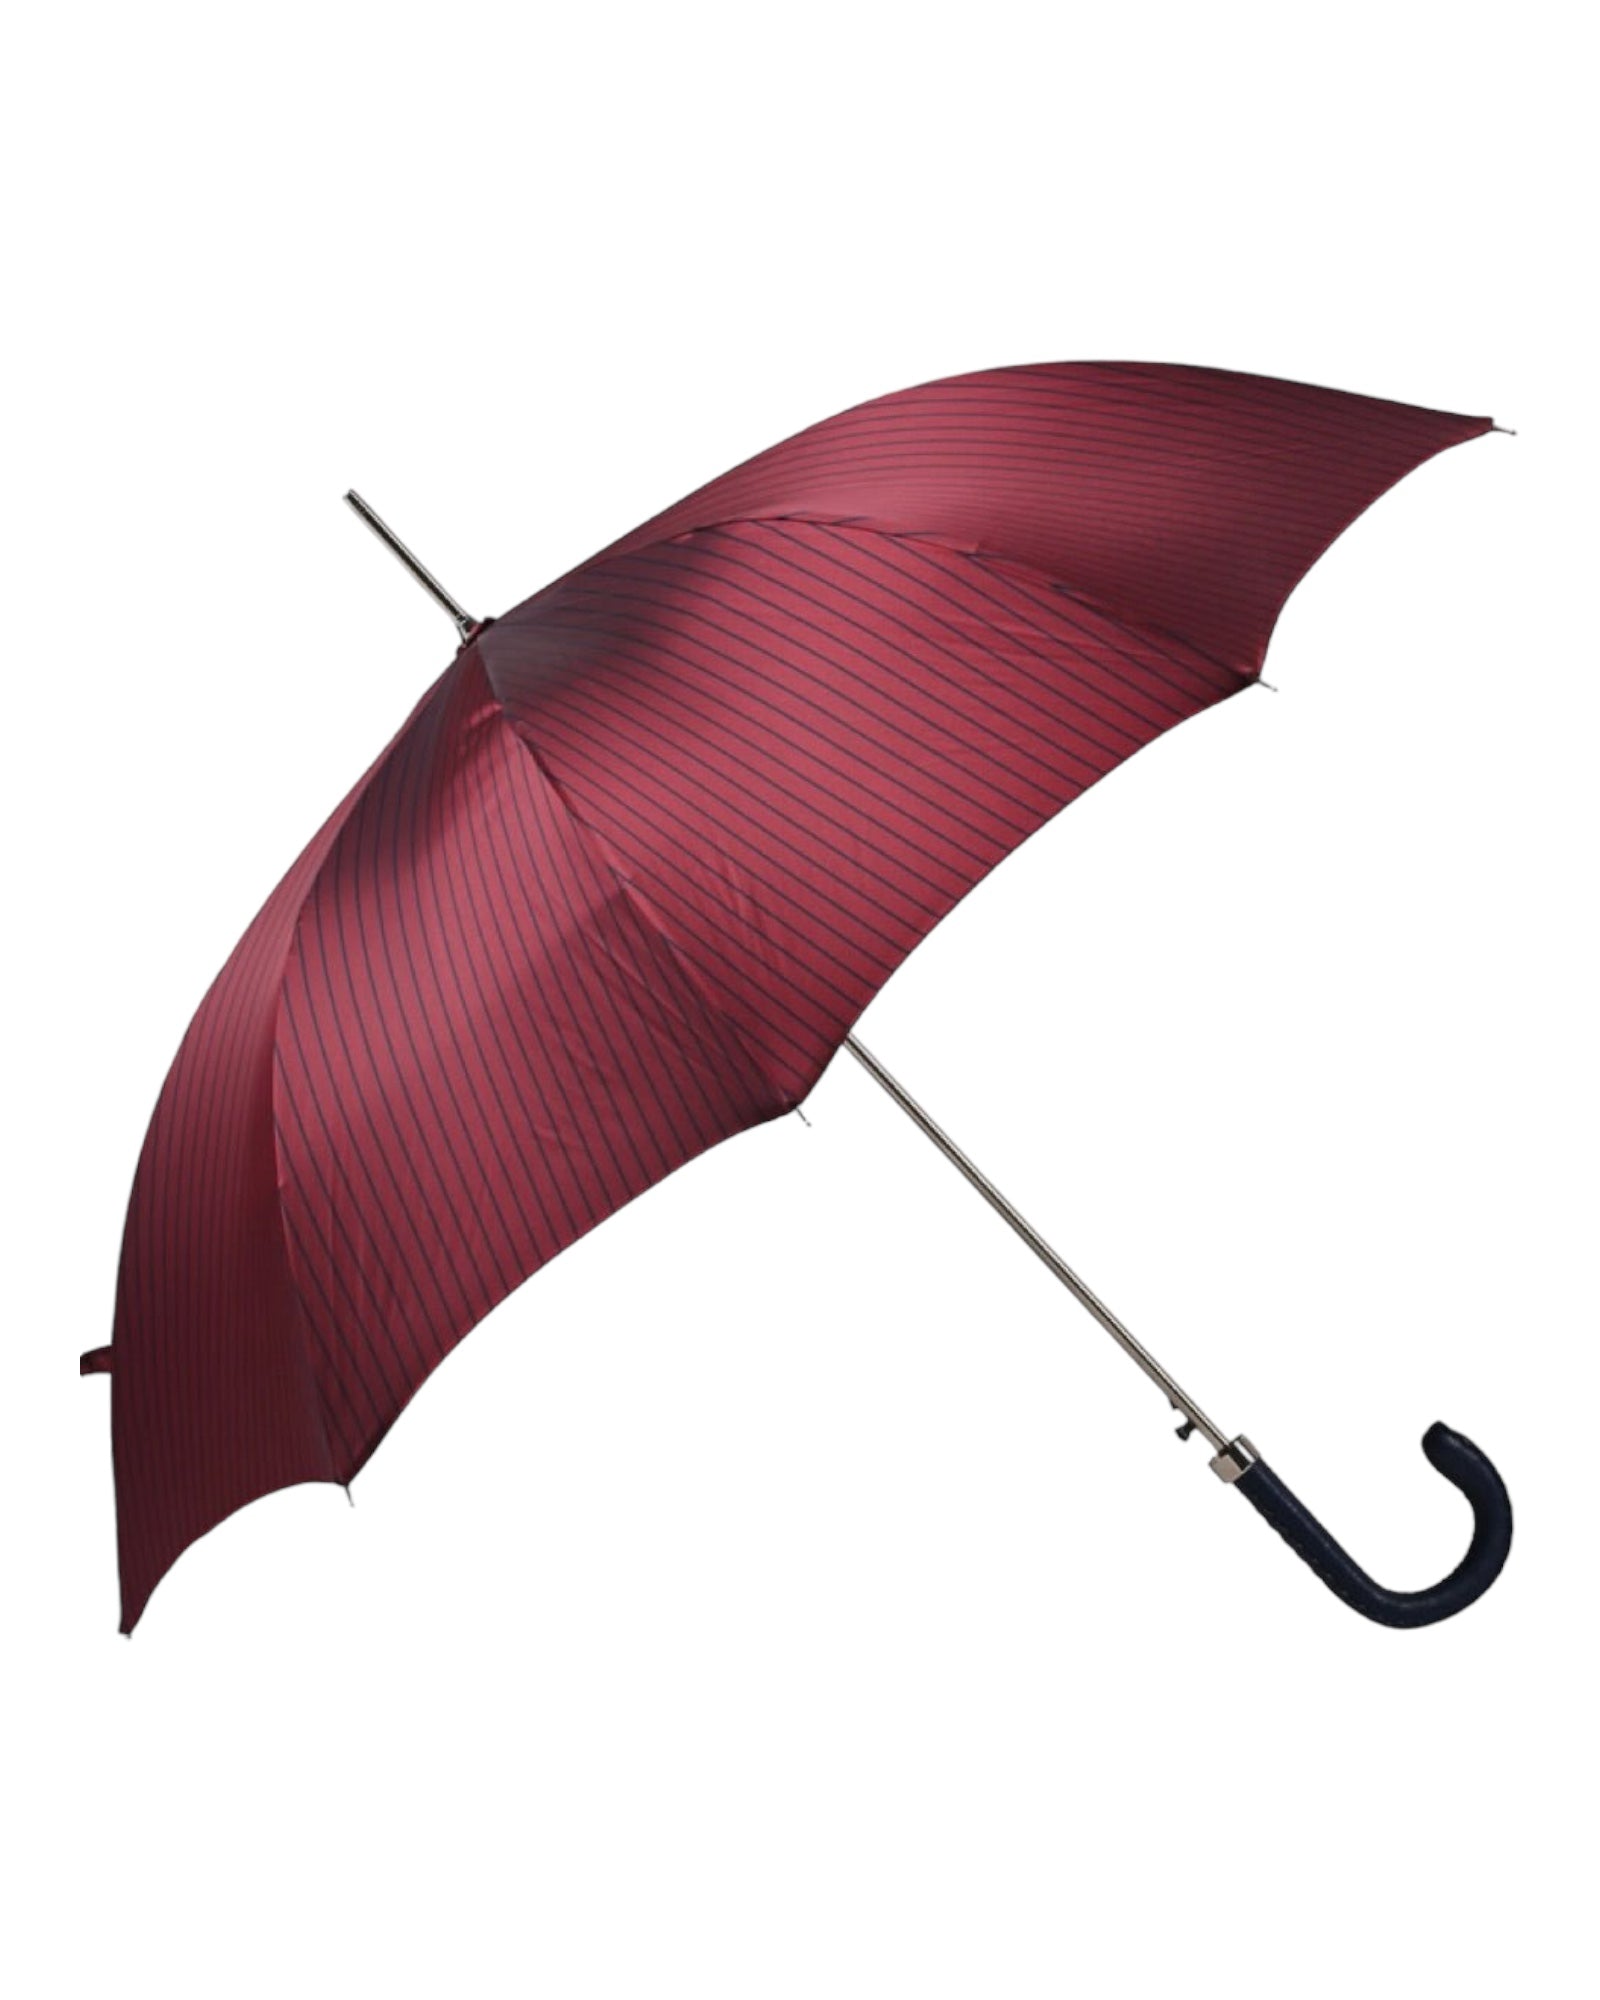 Long Umbrella - Bordeaux, Blue Leather Handle UMBRELLA